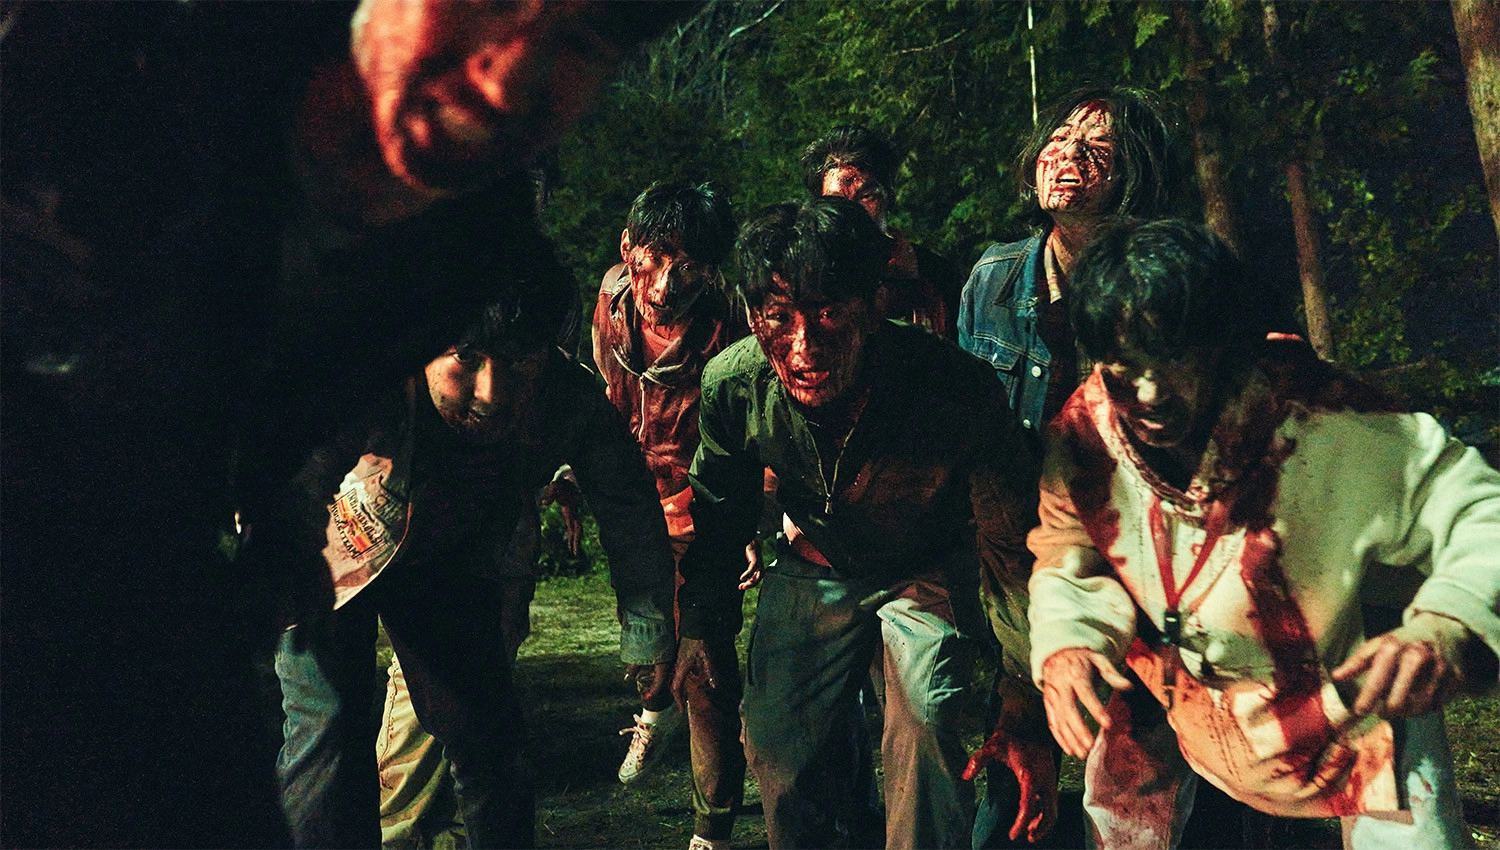 Đội quân zombie khiến nhân vật chính nghẹt thở trốn chạyĐội quân zombie khiến nhân vật chính nghẹt thở trốn chạy